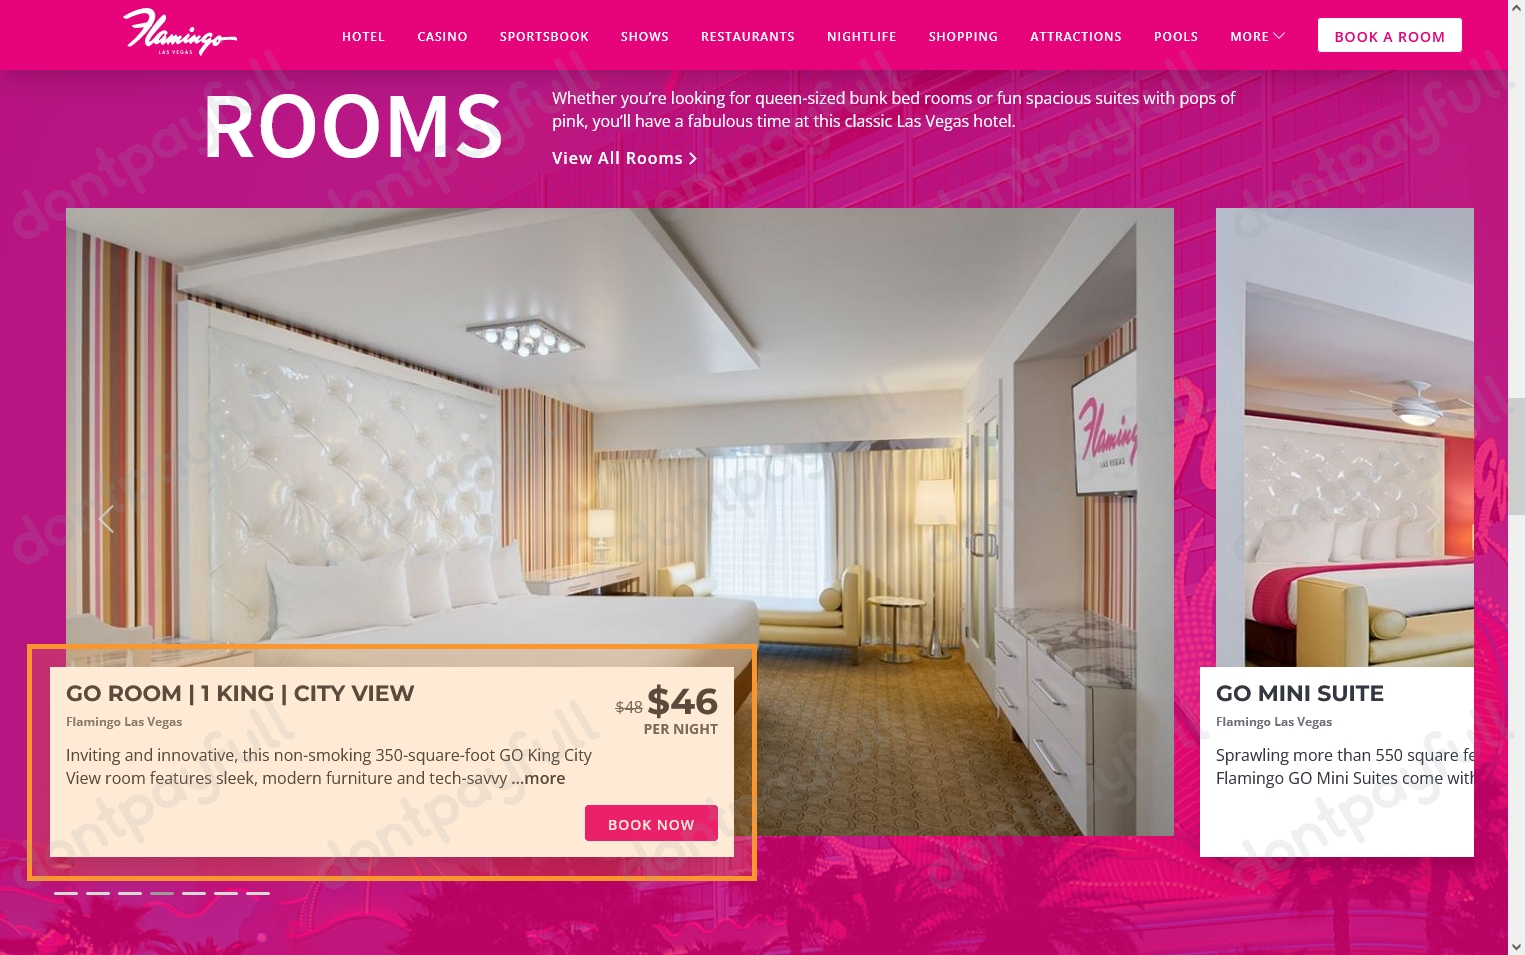 Resort Flamingo Las Vegas Hotel & Casino – Promo Code